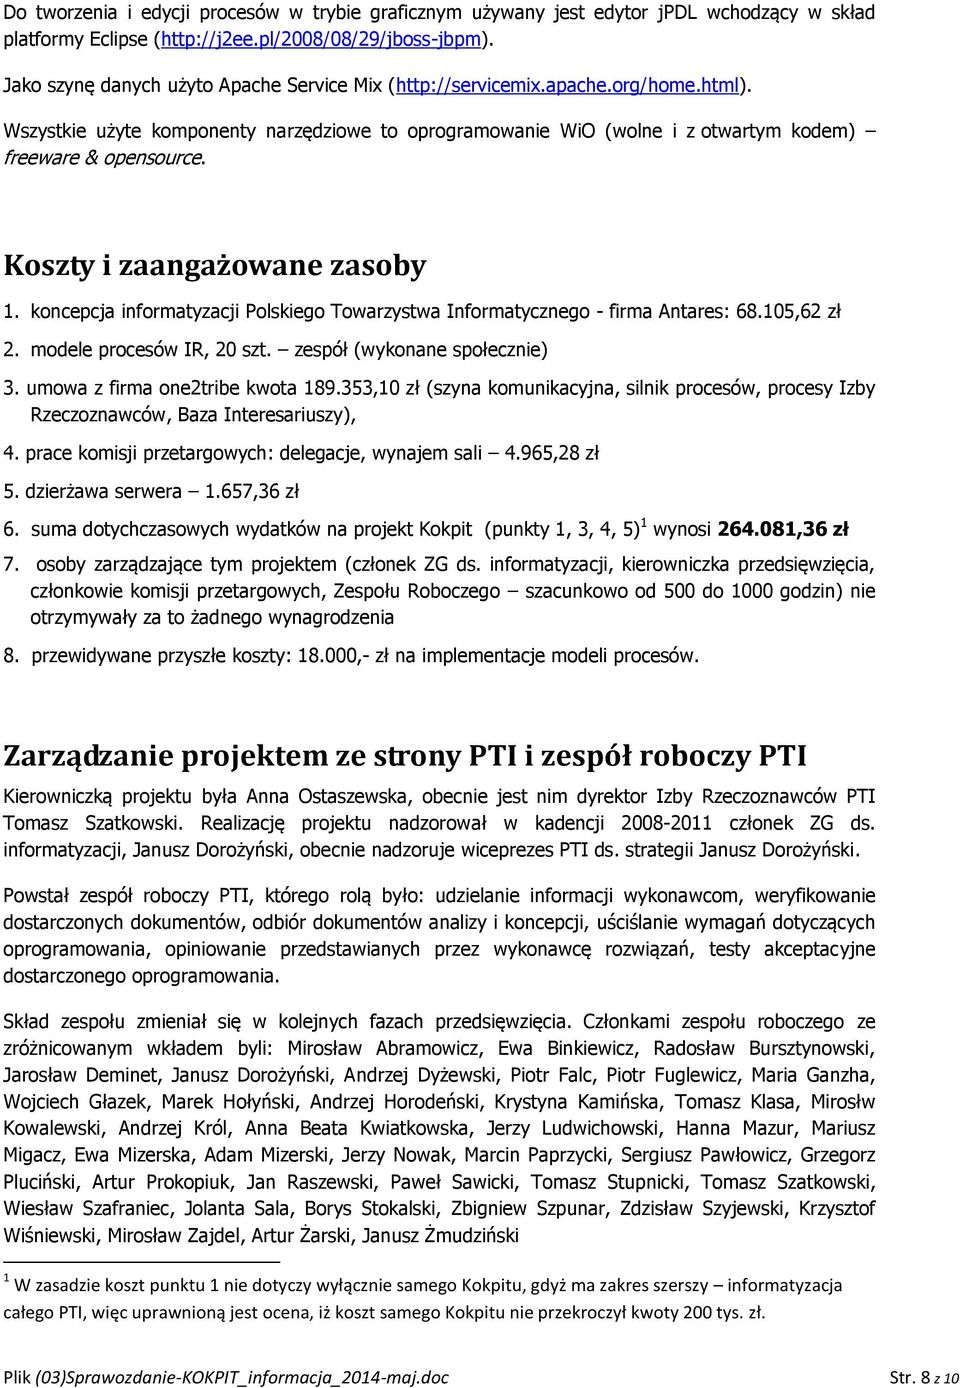 Koszty i zaangażowane zasoby 1. koncepcja informatyzacji Polskiego Towarzystwa Informatycznego - firma Antares: 68.105,62 zł 2. modele procesów IR, 20 szt. zespół (wykonane społecznie) 3.